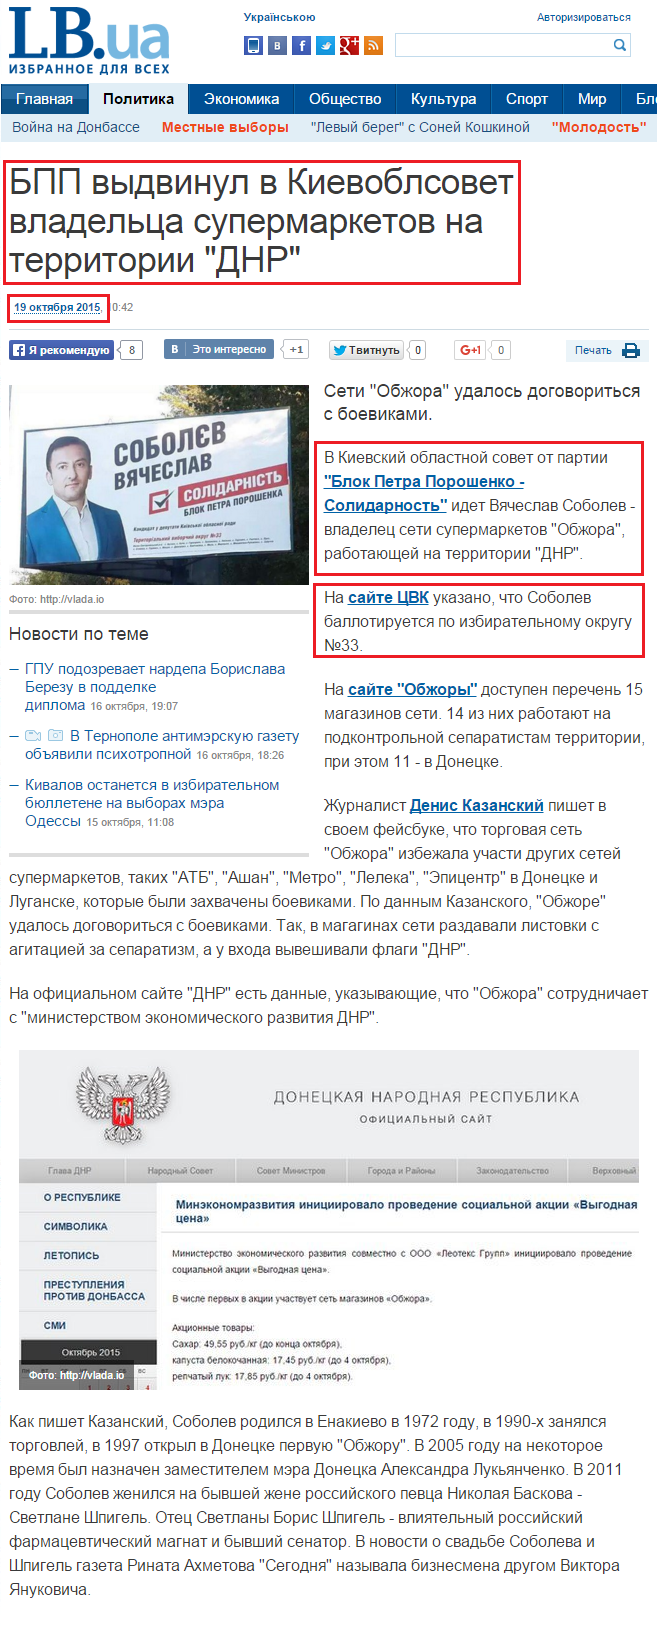 http://lb.ua/news/2015/10/19/318722_bpp_vidvinul_kievoblsovet.html